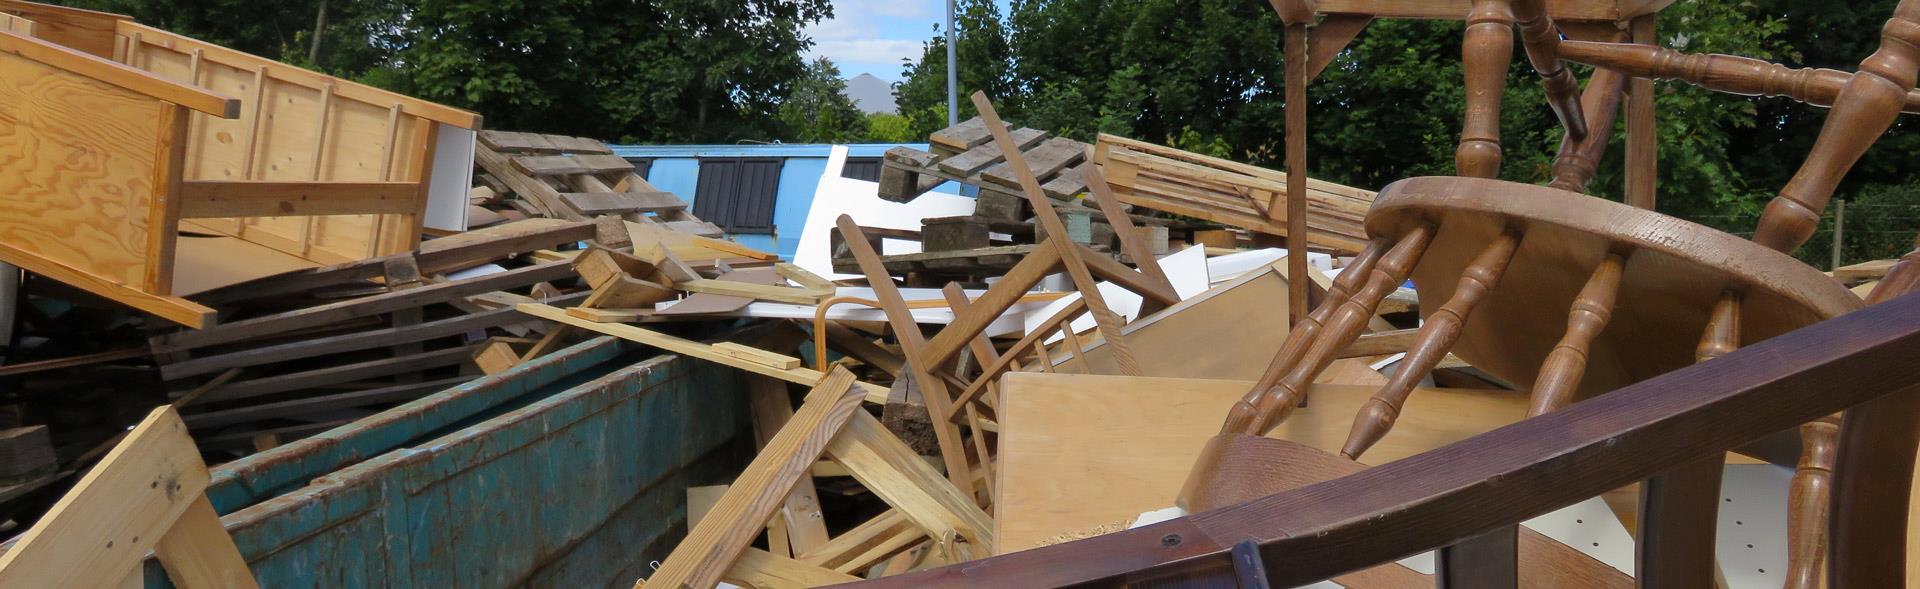 Træmøbler og andet træaffald i container på genbrugsplads